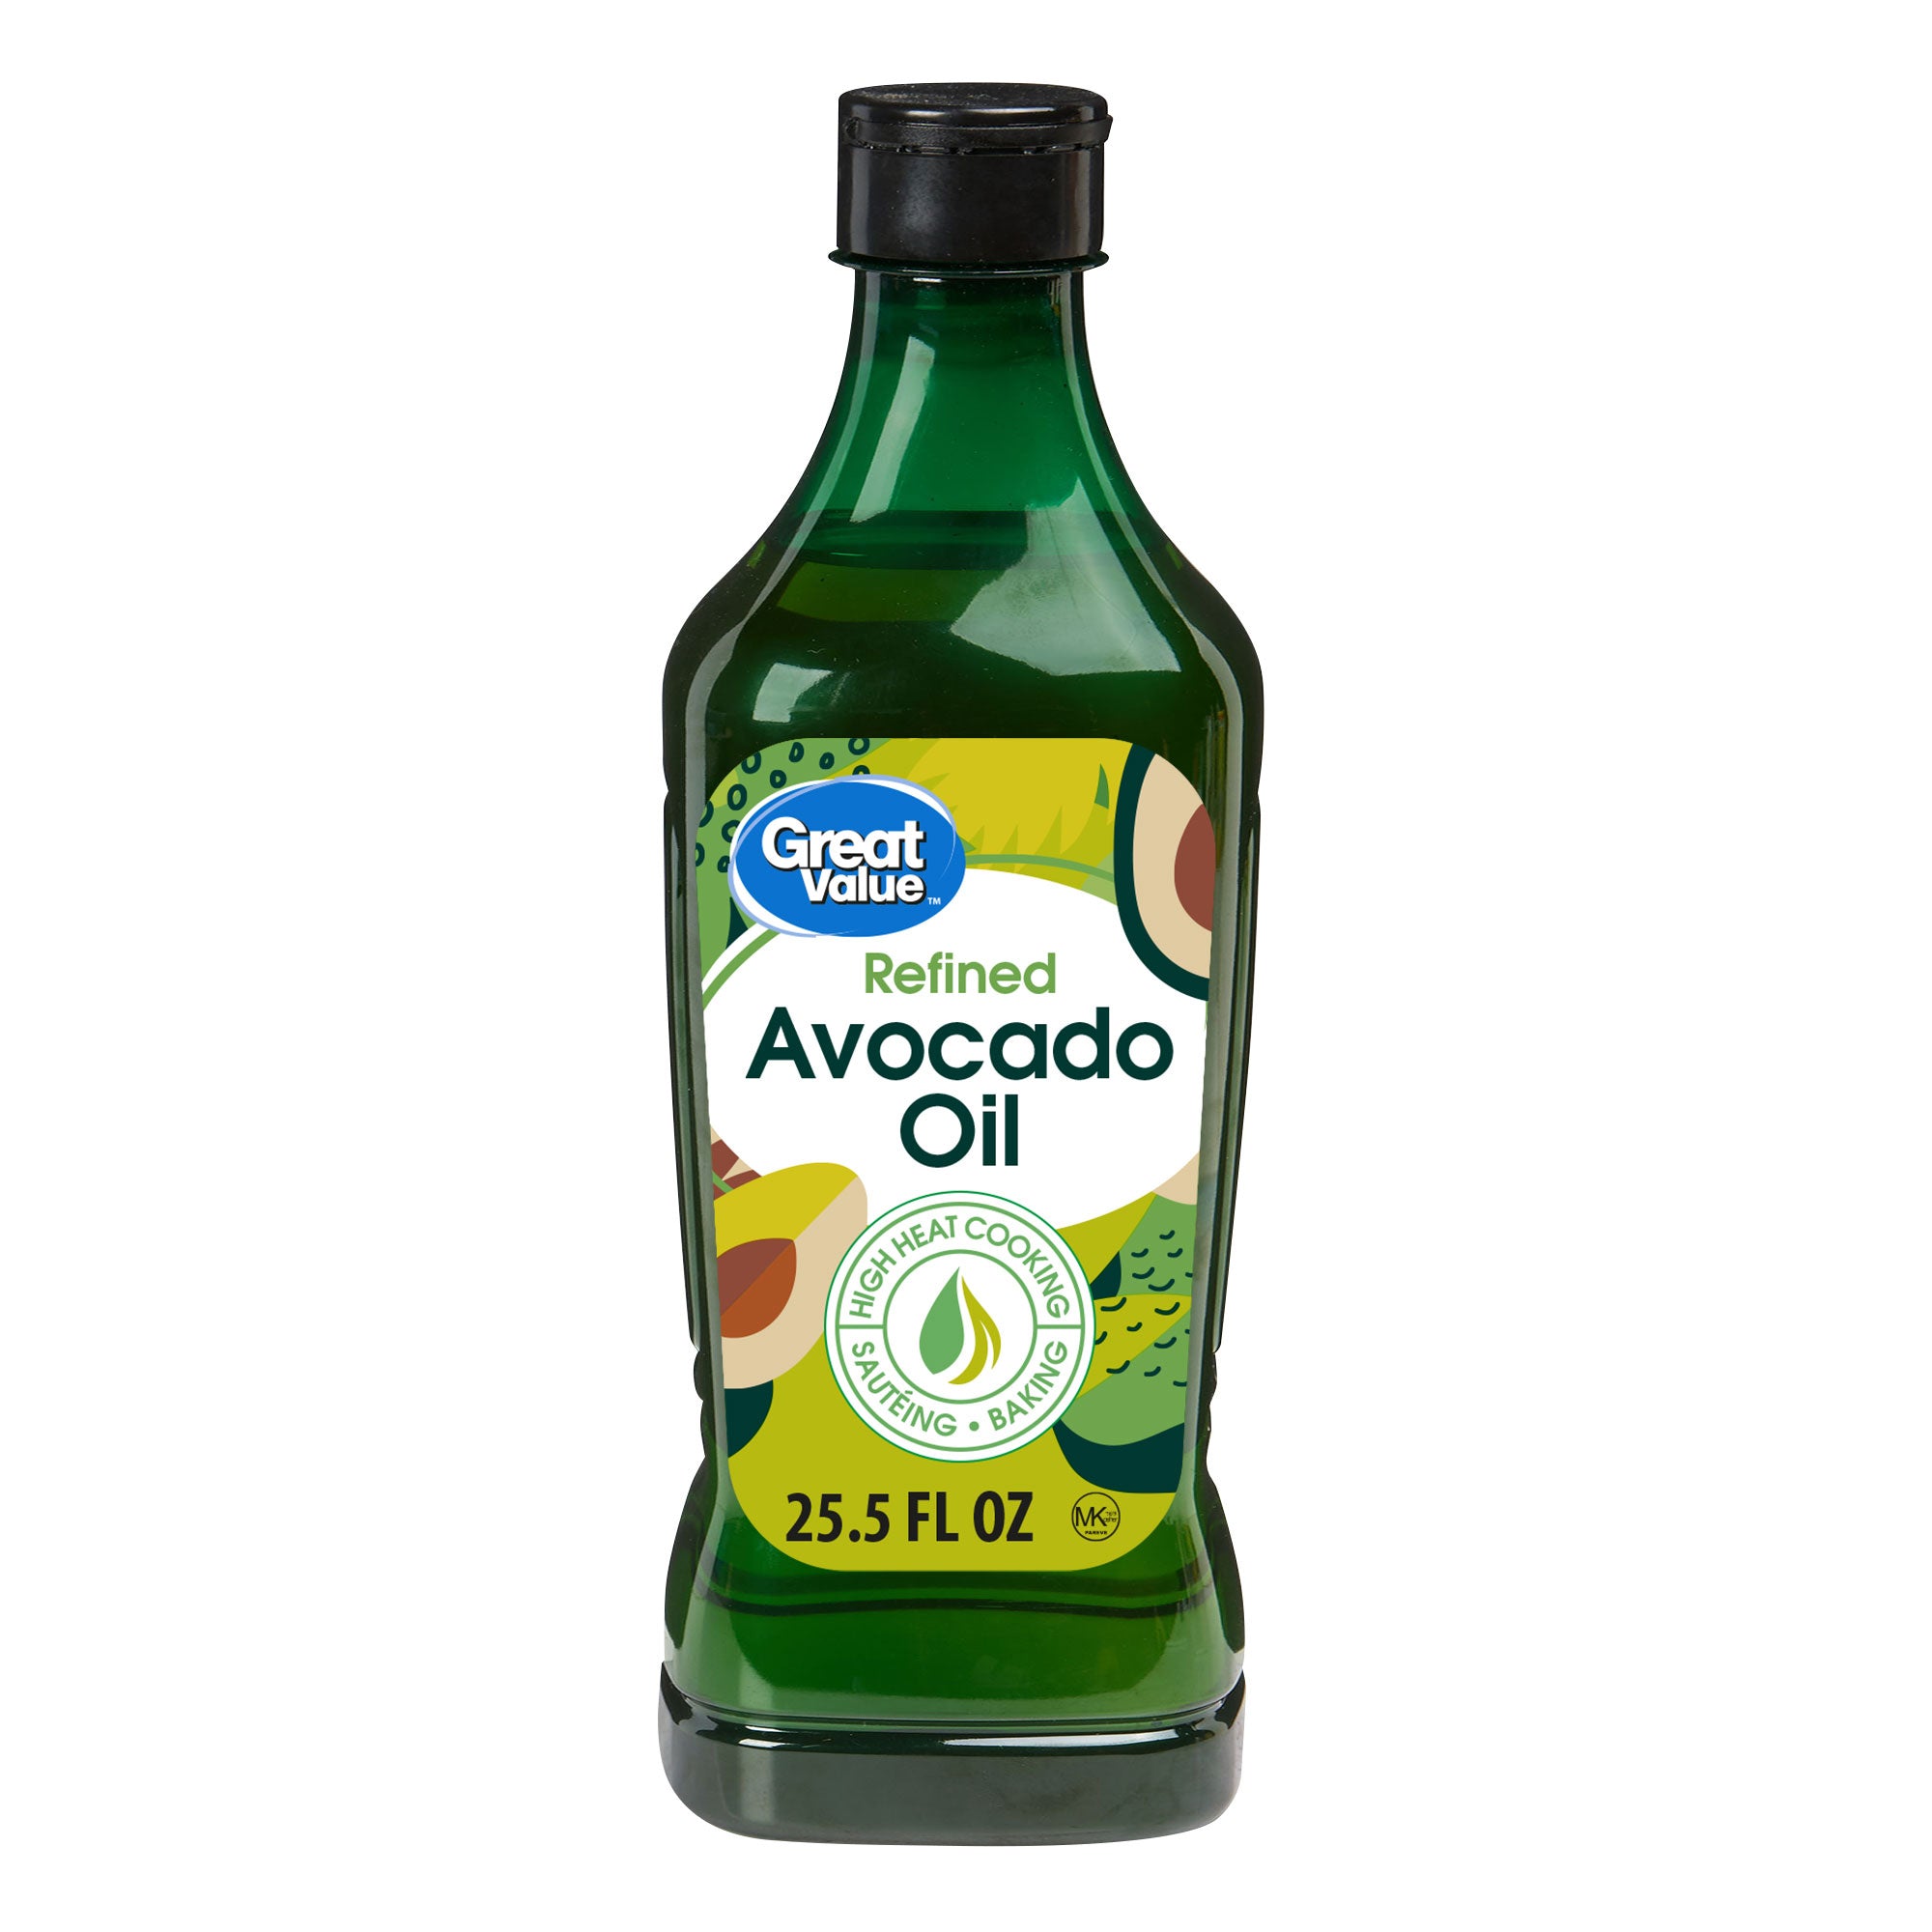 Great Value Refined Avocado Oil, 25.5 fl oz